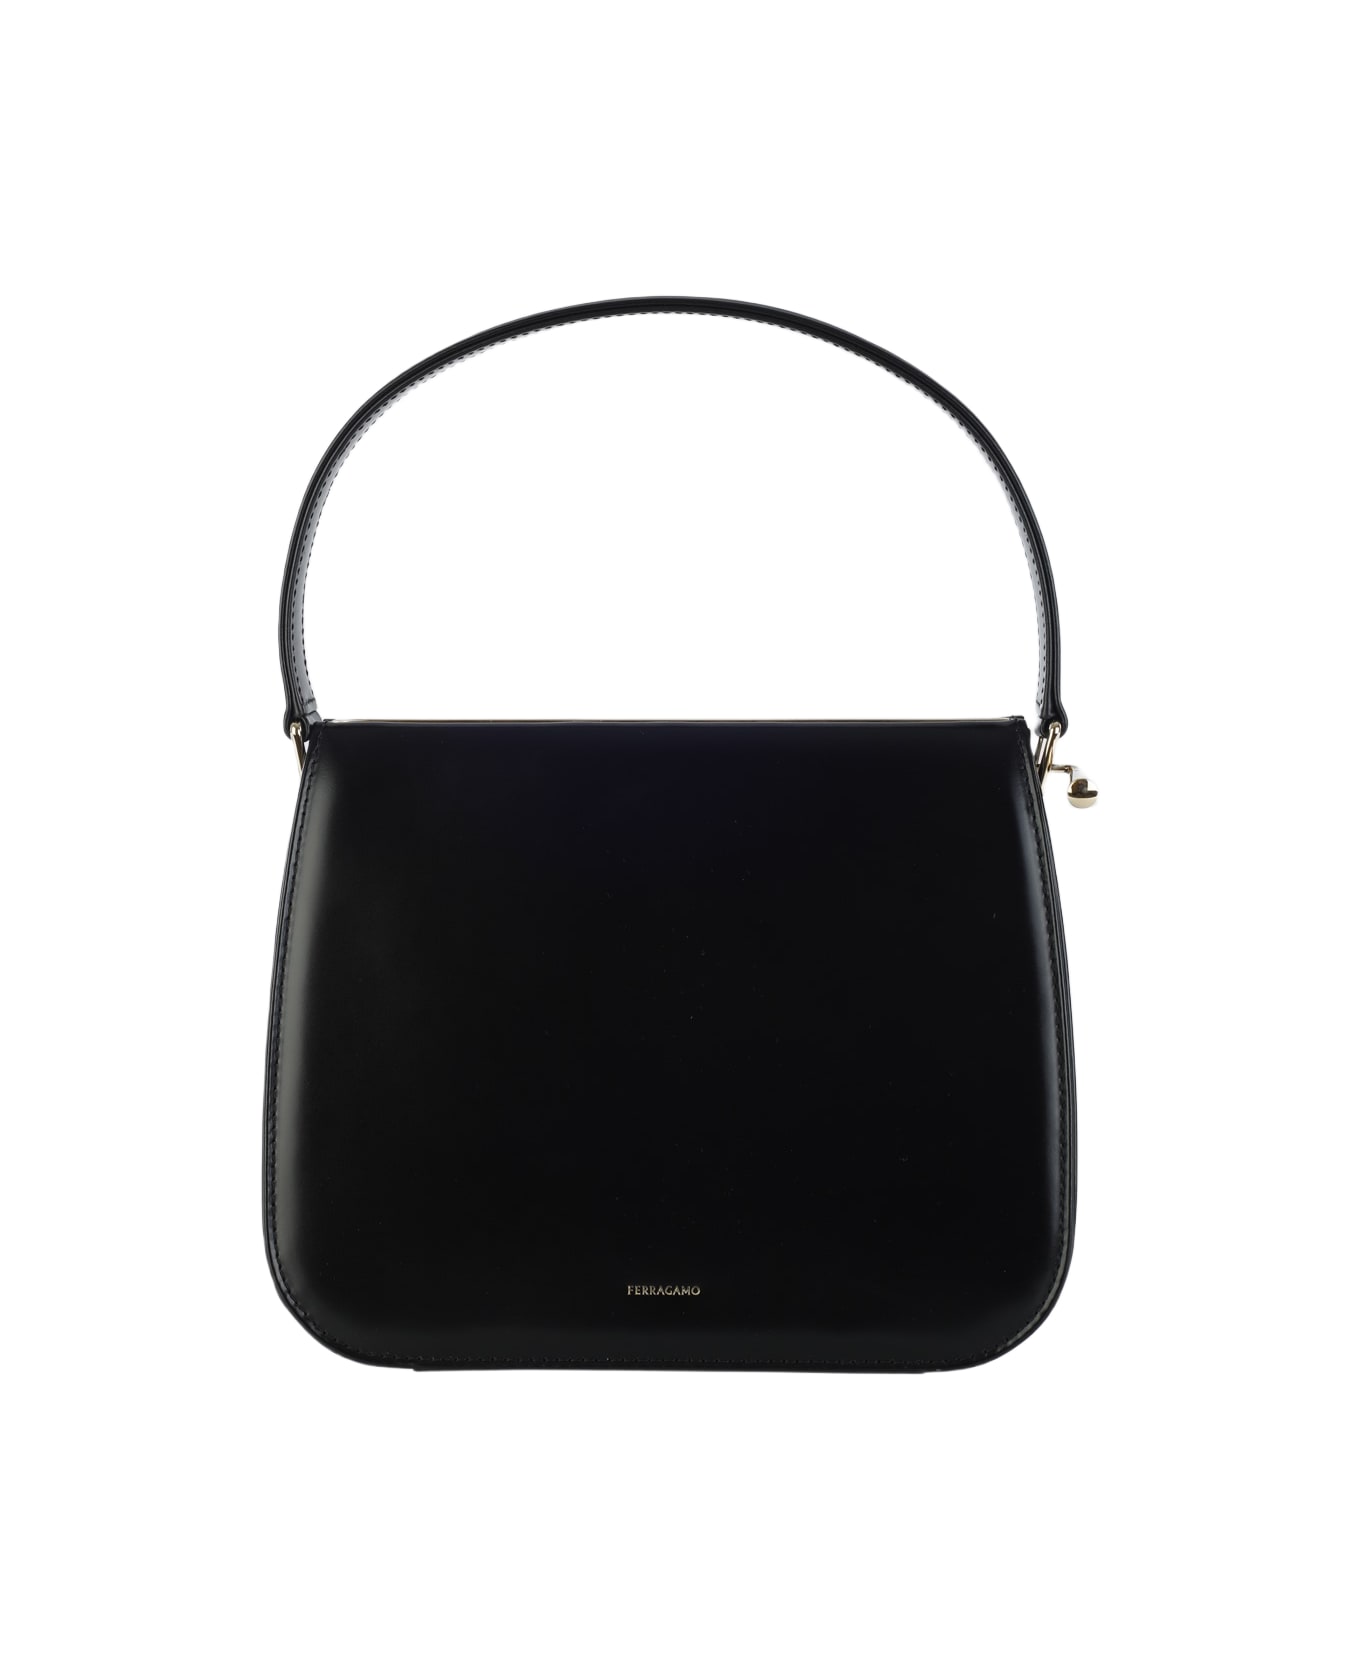 Ferragamo Black Leather New Frame Shoulder Bag - Black